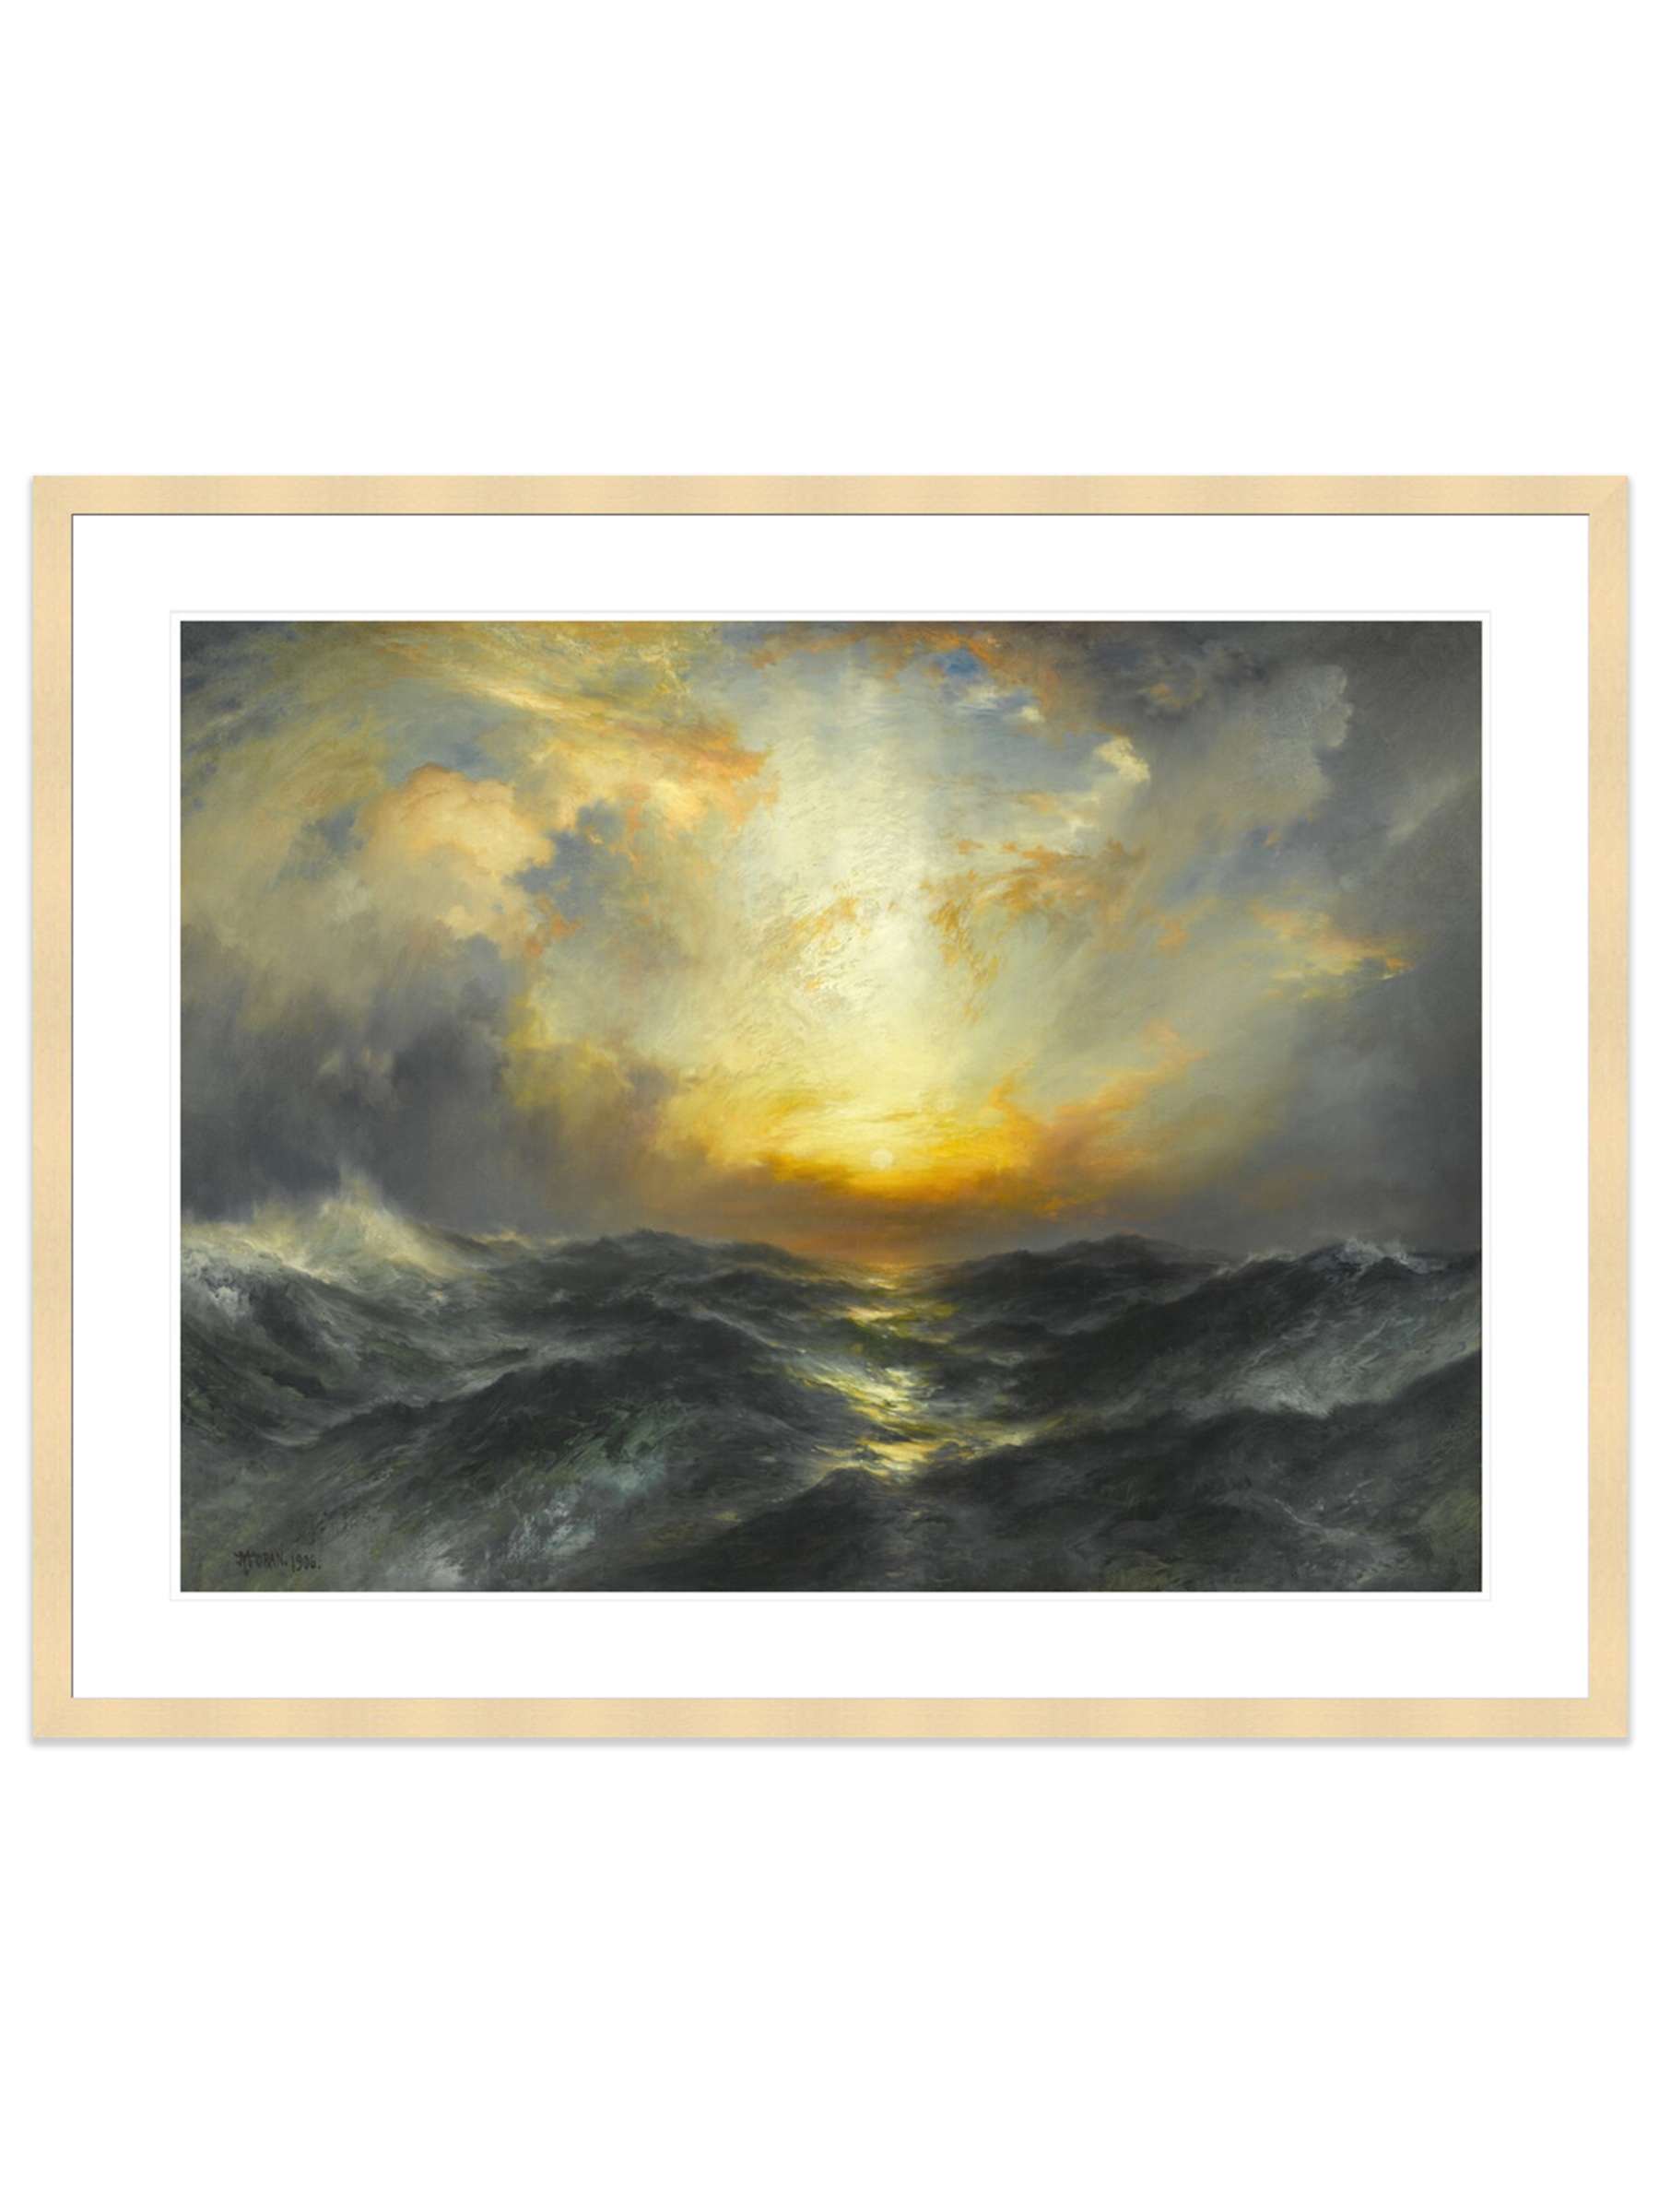 Sunset at Sea (Print) by Thomas Moran